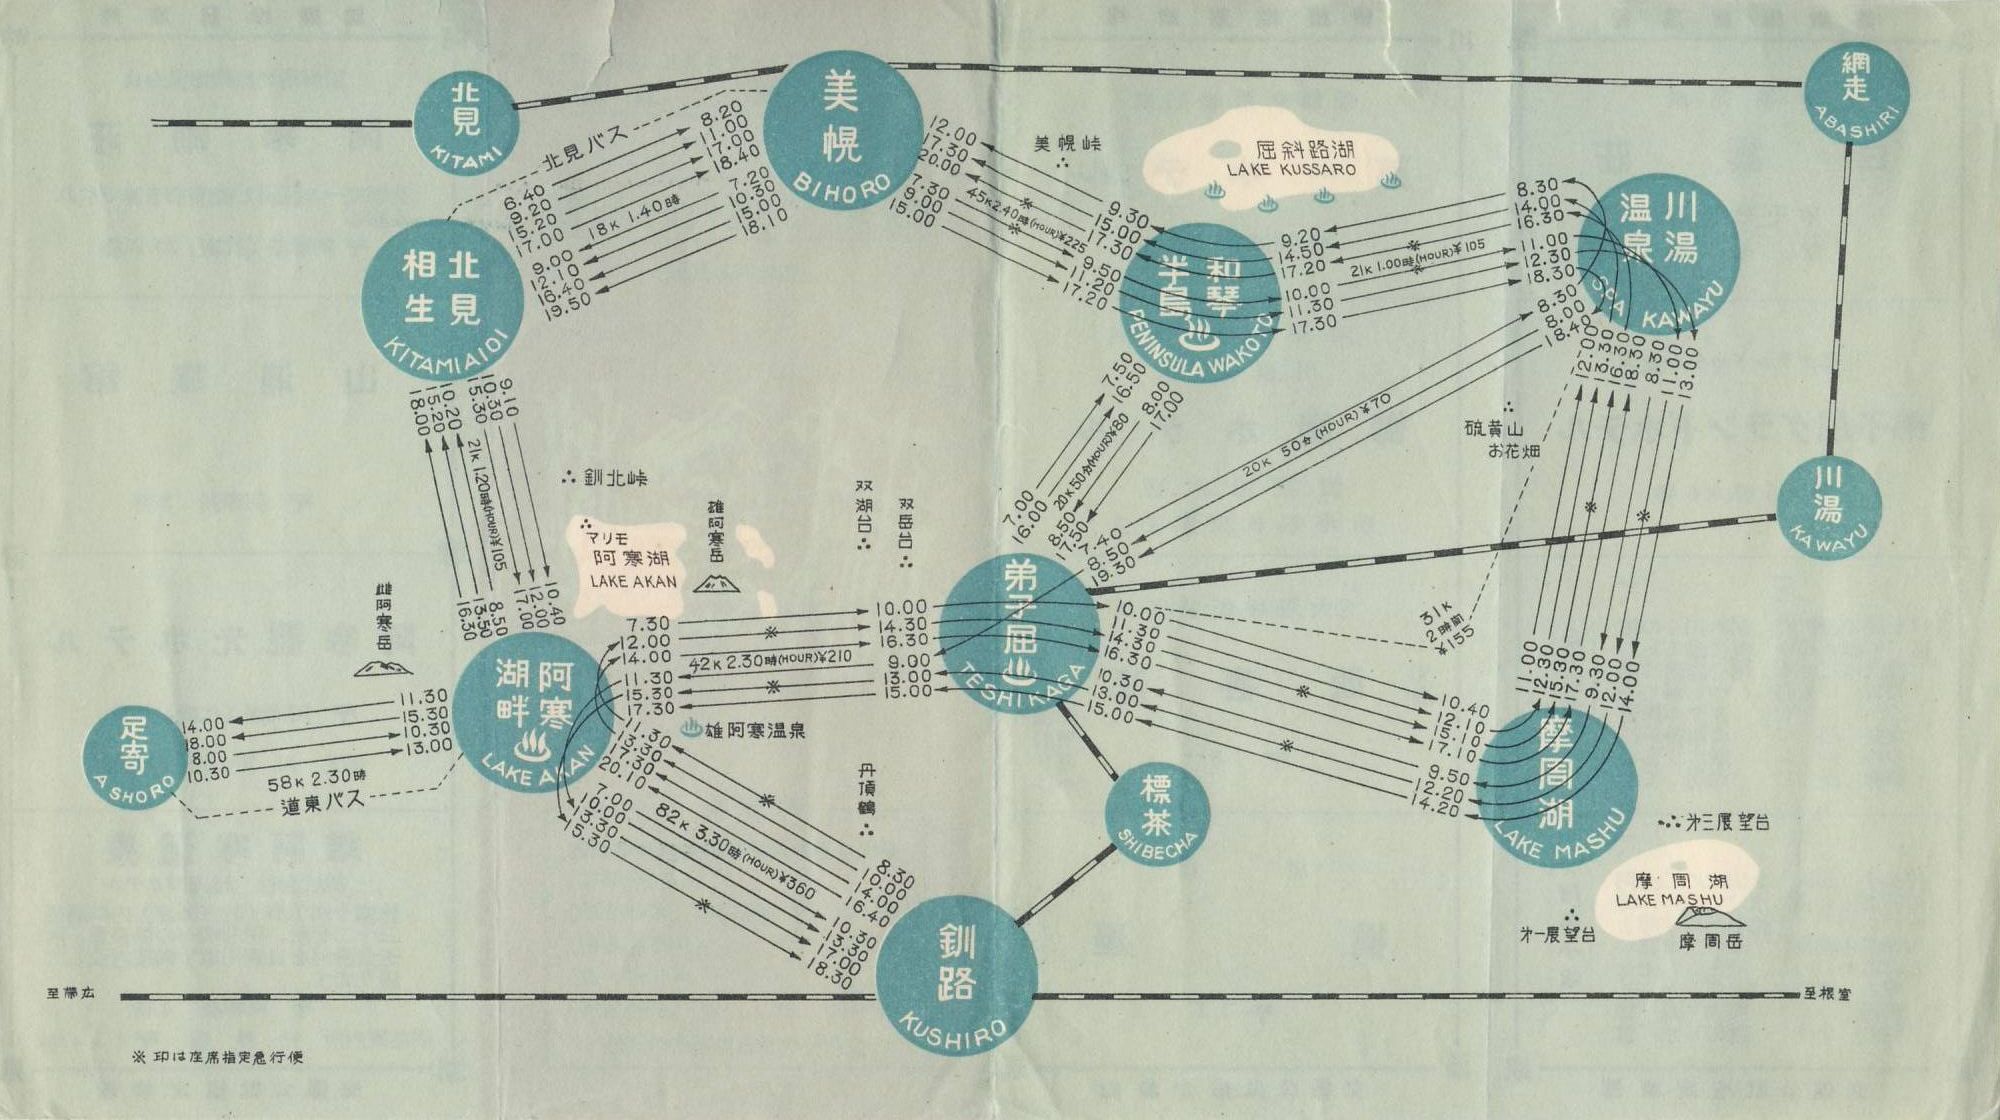 1953年度_東邦交通_観光定期バス時刻表裏面